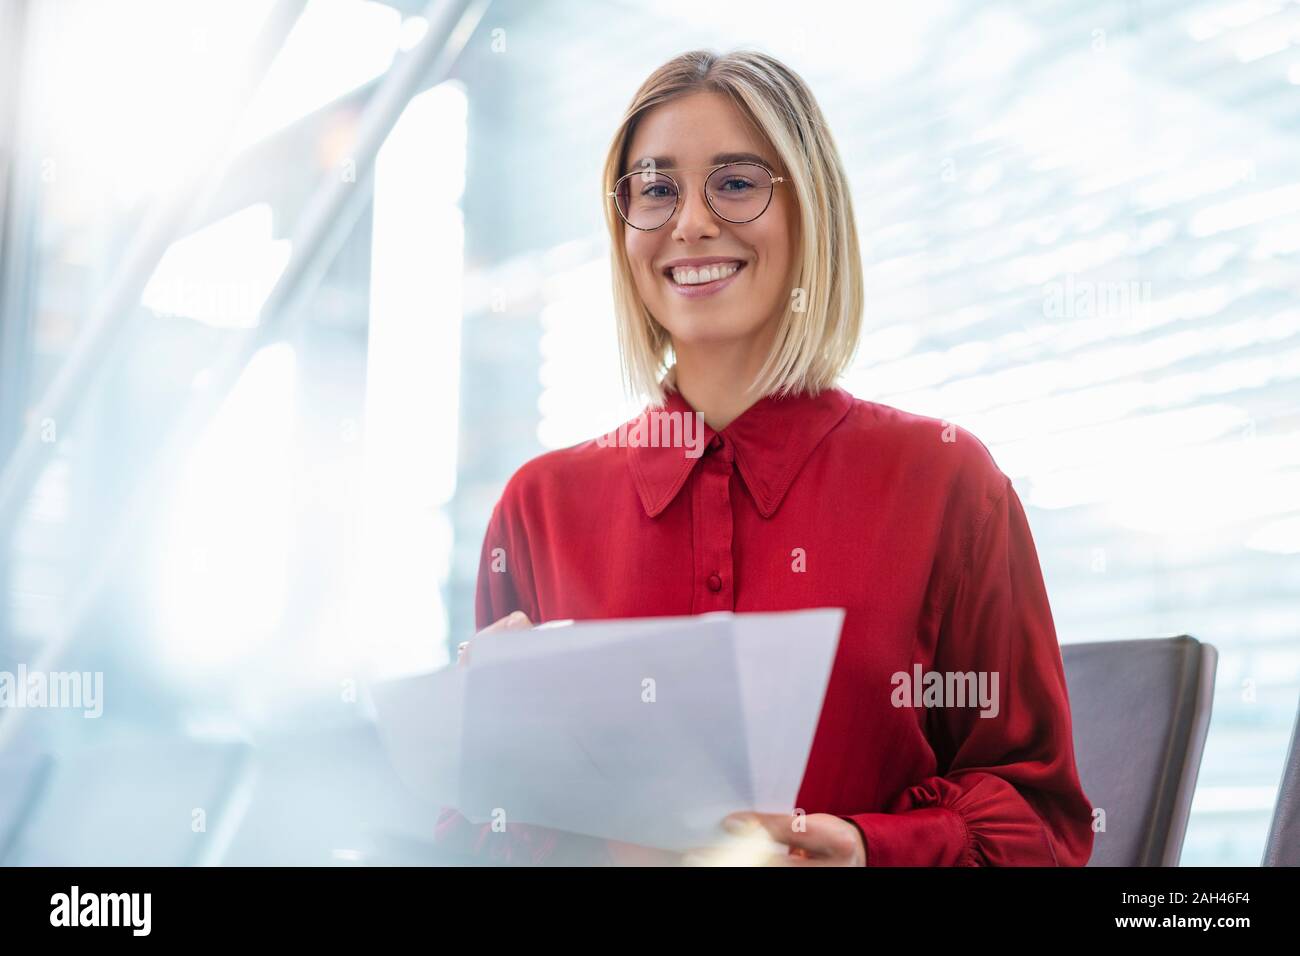 Portrait of smiling young businesswoman avec papiers assis dans la salle d'attente Banque D'Images